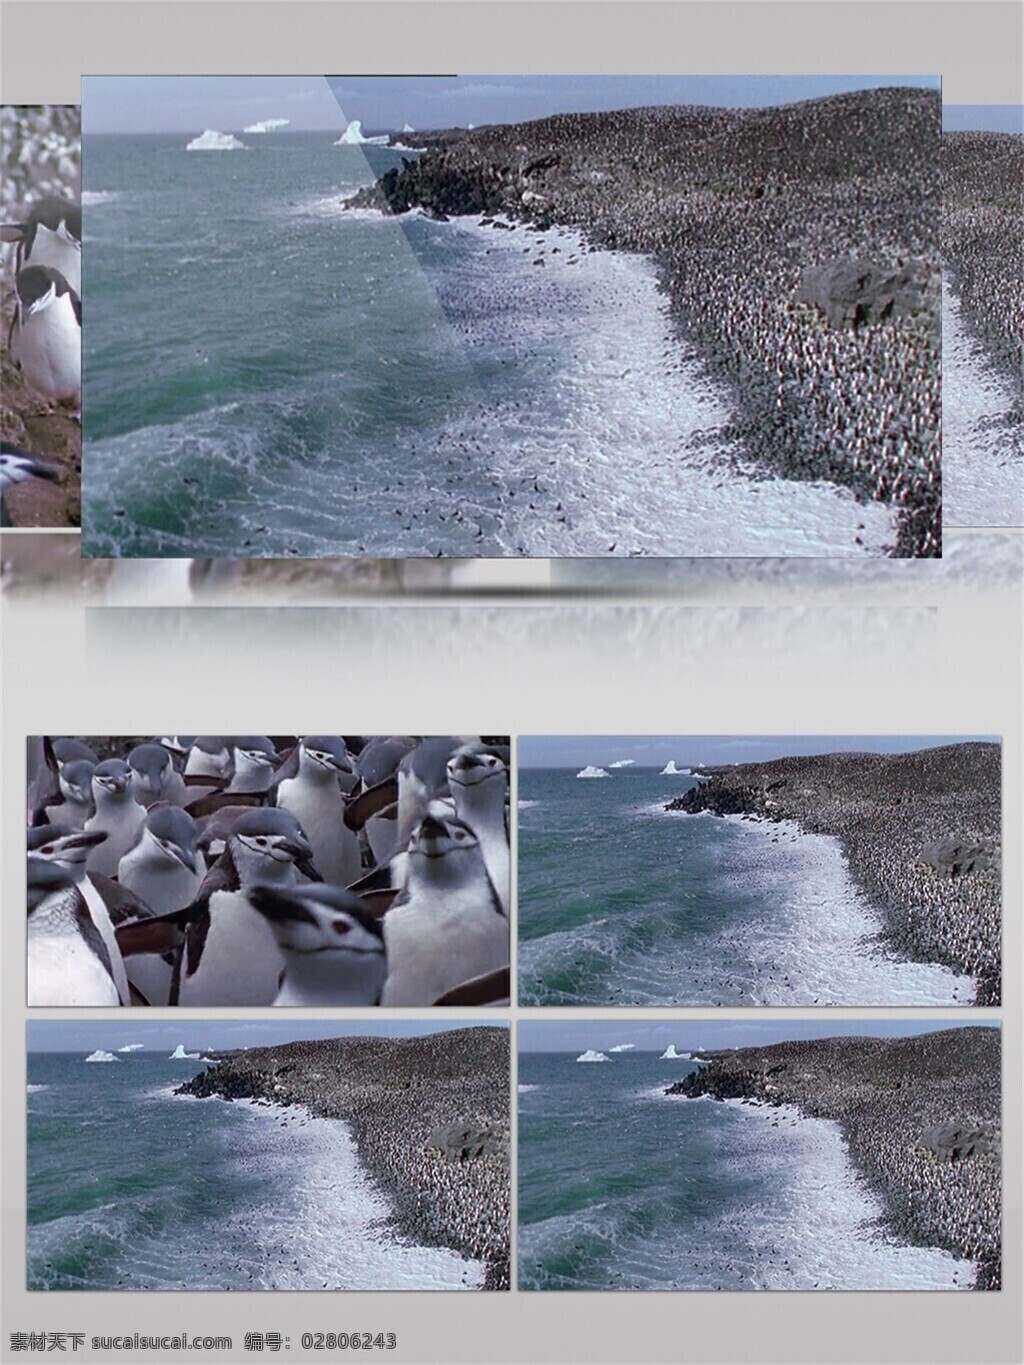 海岸边 站 满 很多 企鹅 视频 音效 活跃 海浪 可爱 动物 视频素材 全球暖化 视频音效